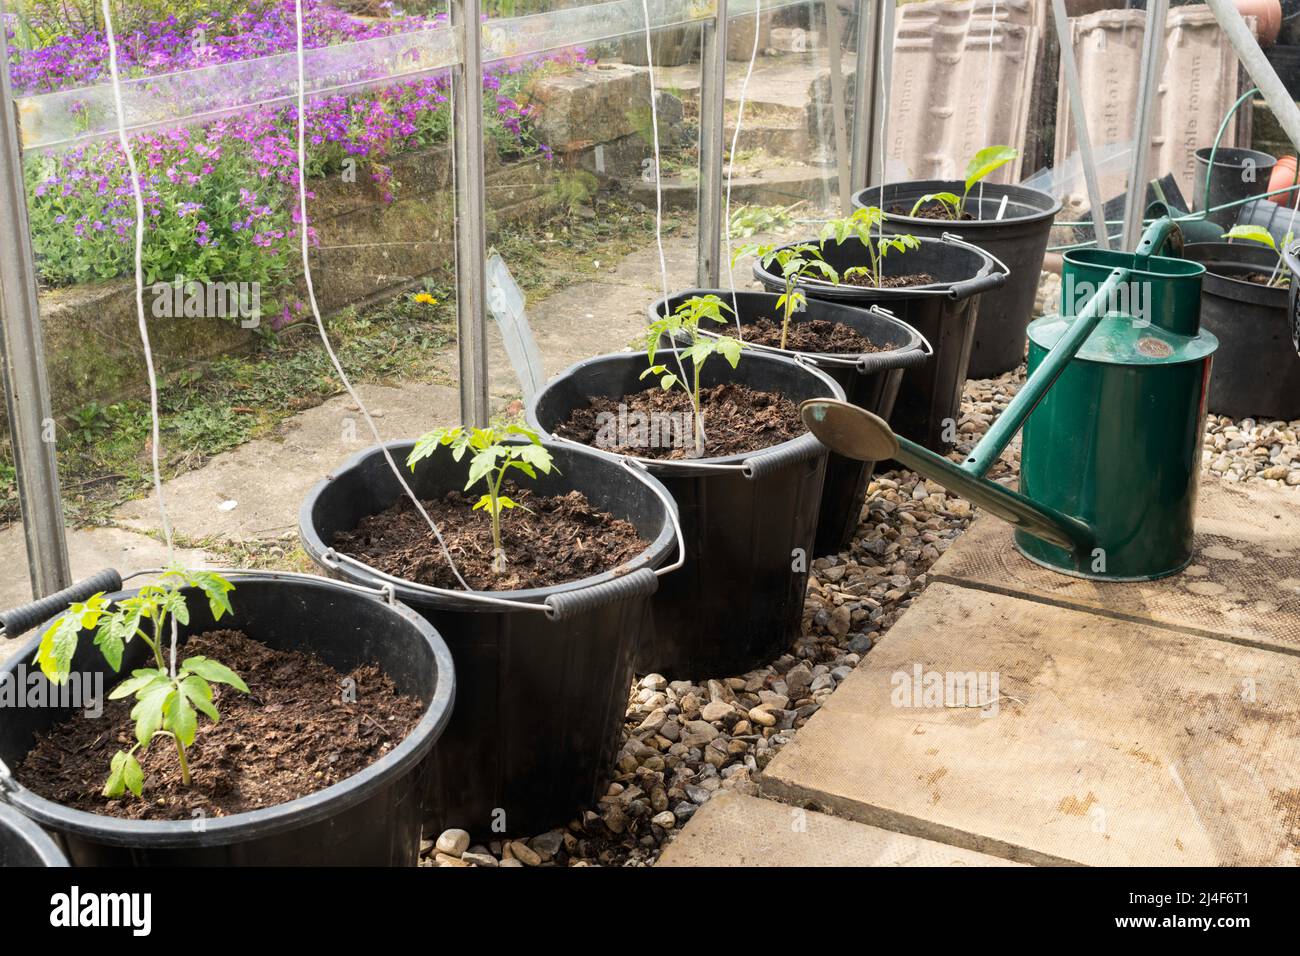 Plantas jóvenes de tomate, variedad Gardener's Delight, plantadas en grandes macetas o cubos dentro de un invernadero, Inglaterra, Reino Unido Foto de stock